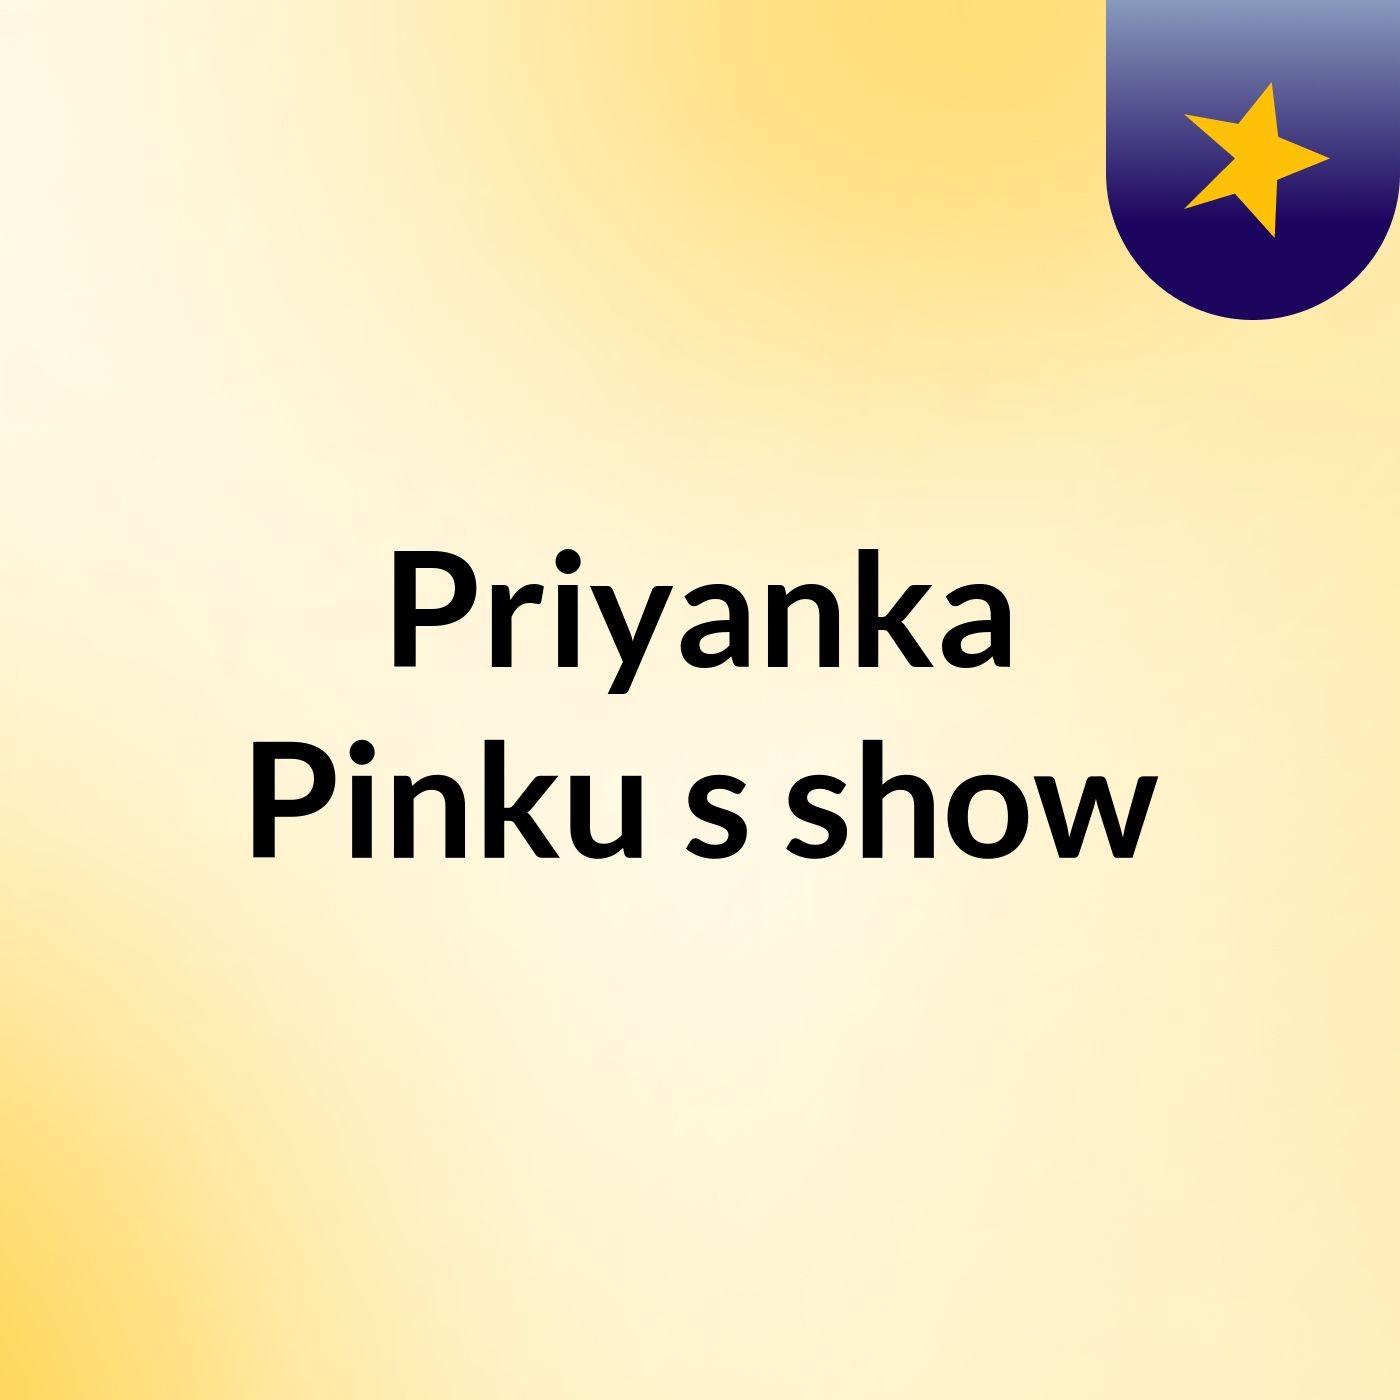 Priyanka Pinku's show